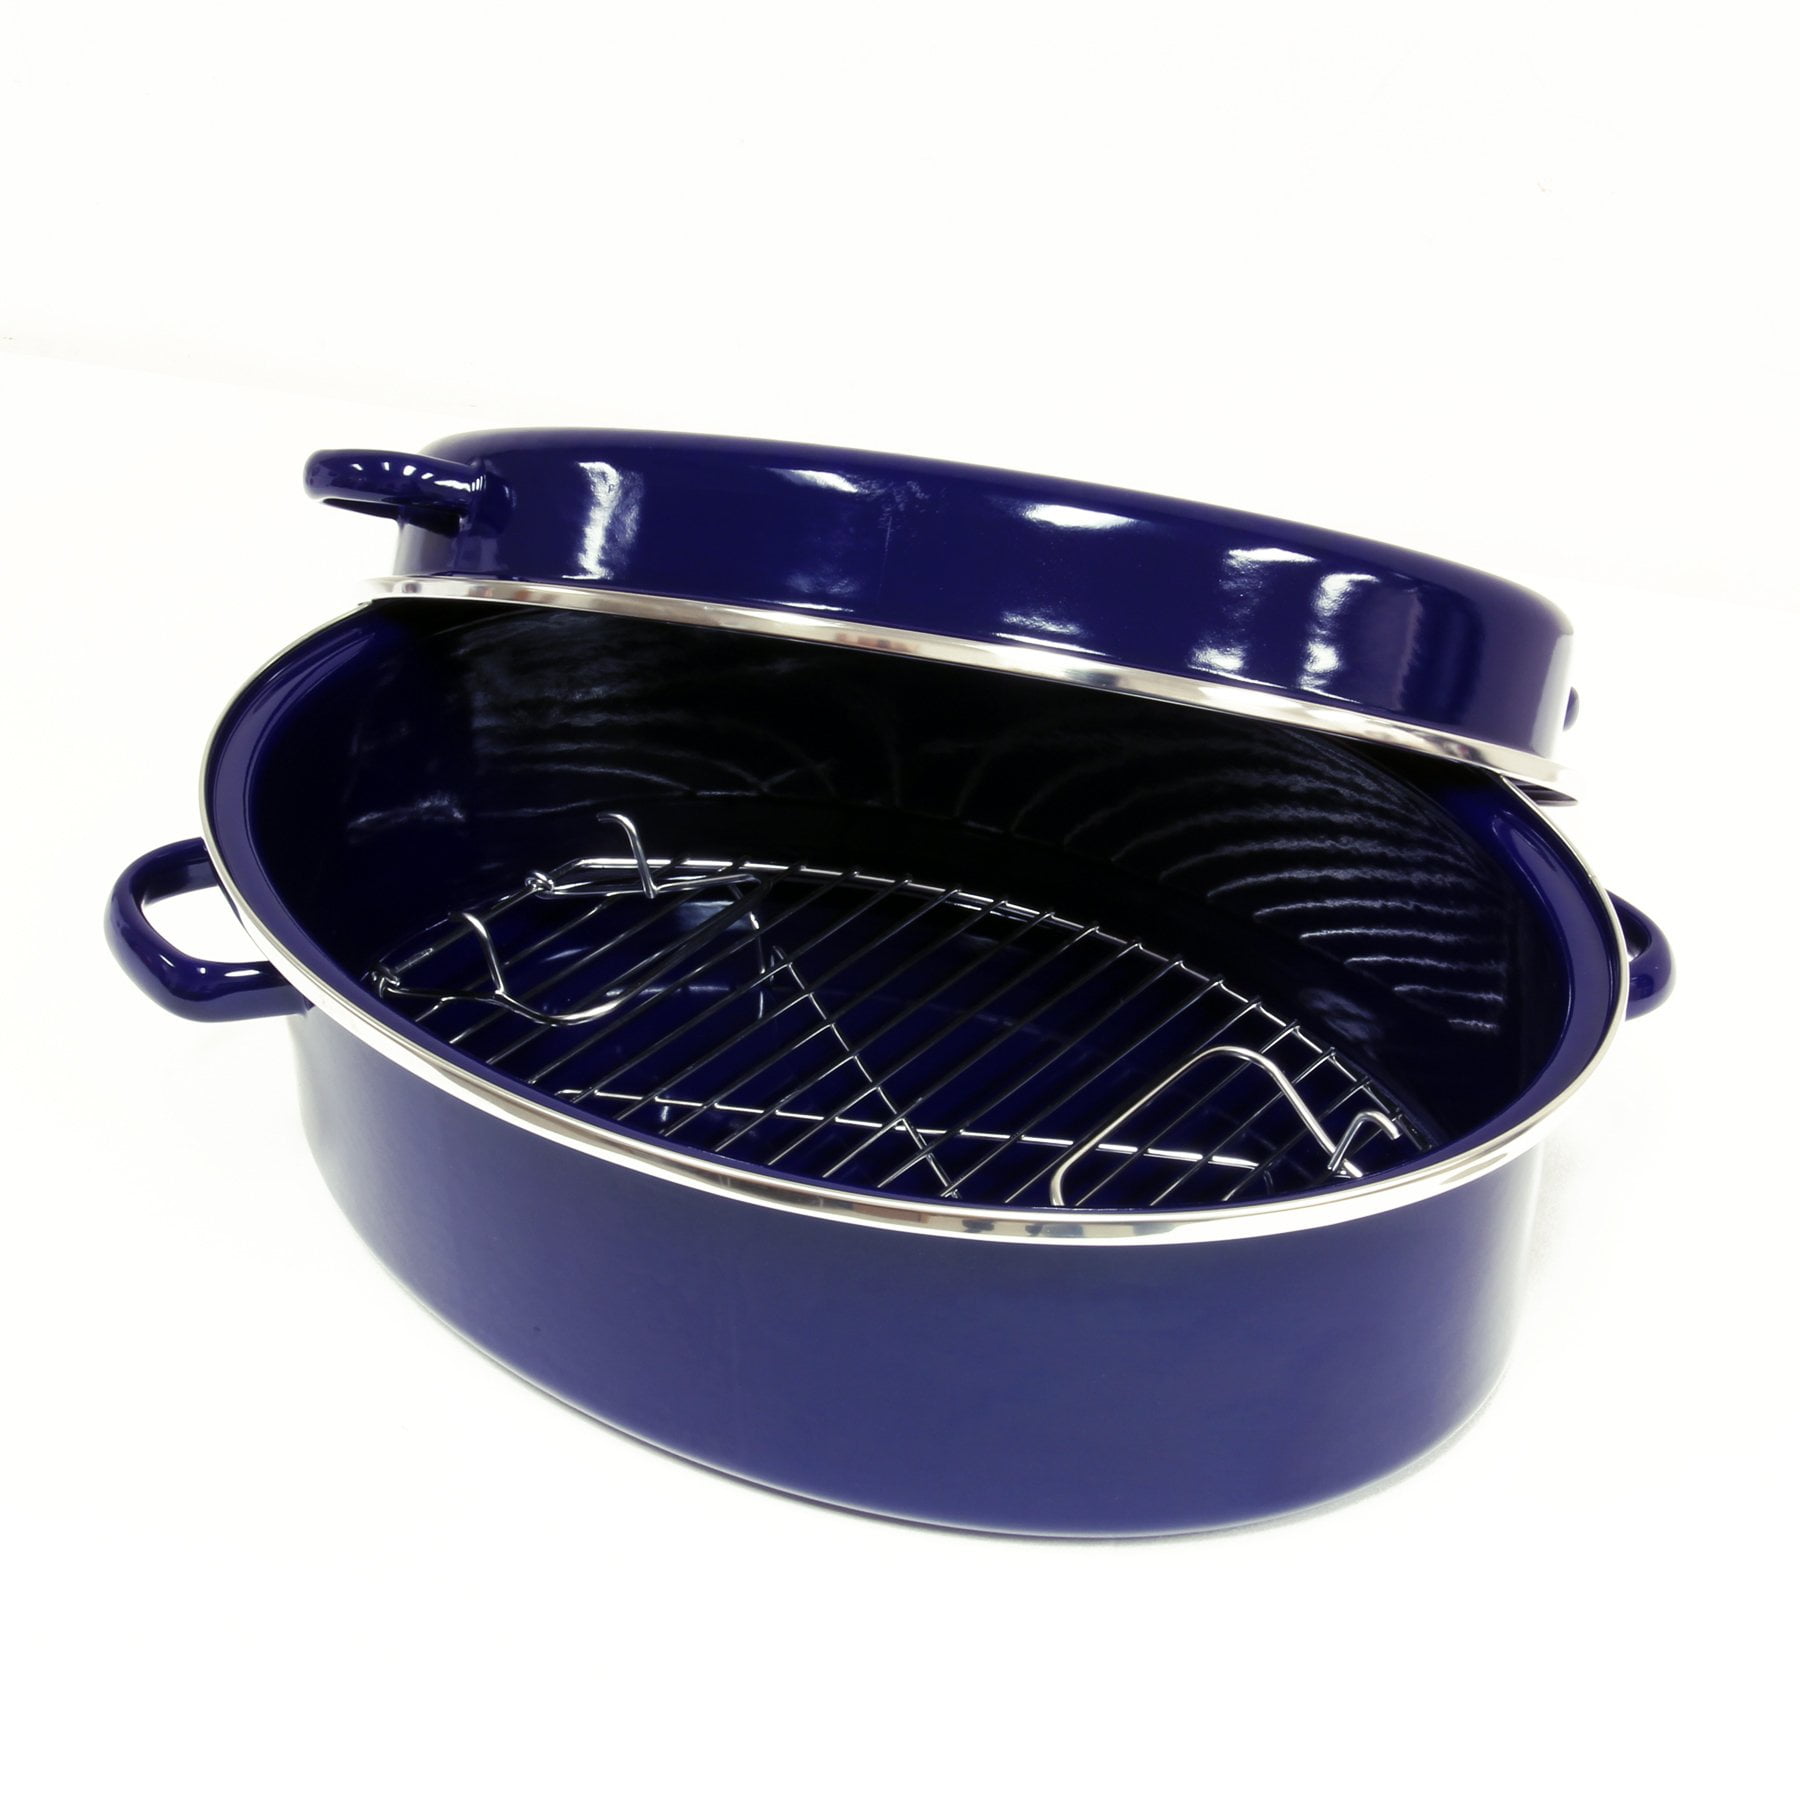 Chantal Cast Iron Cookware, 5 Quart Dutch Oven, Cobalt Blue